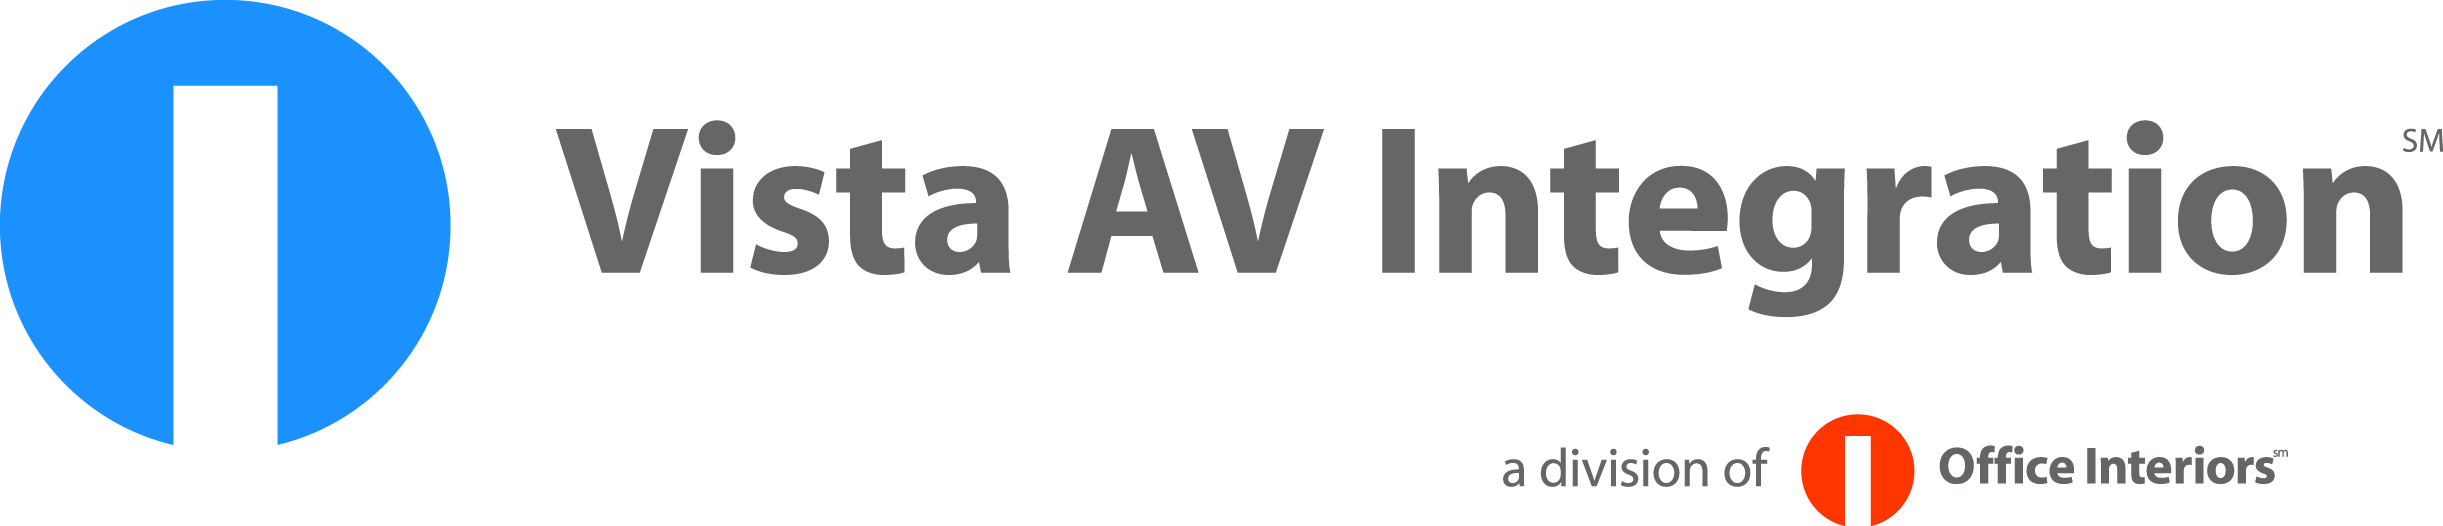 Vista AV Integration